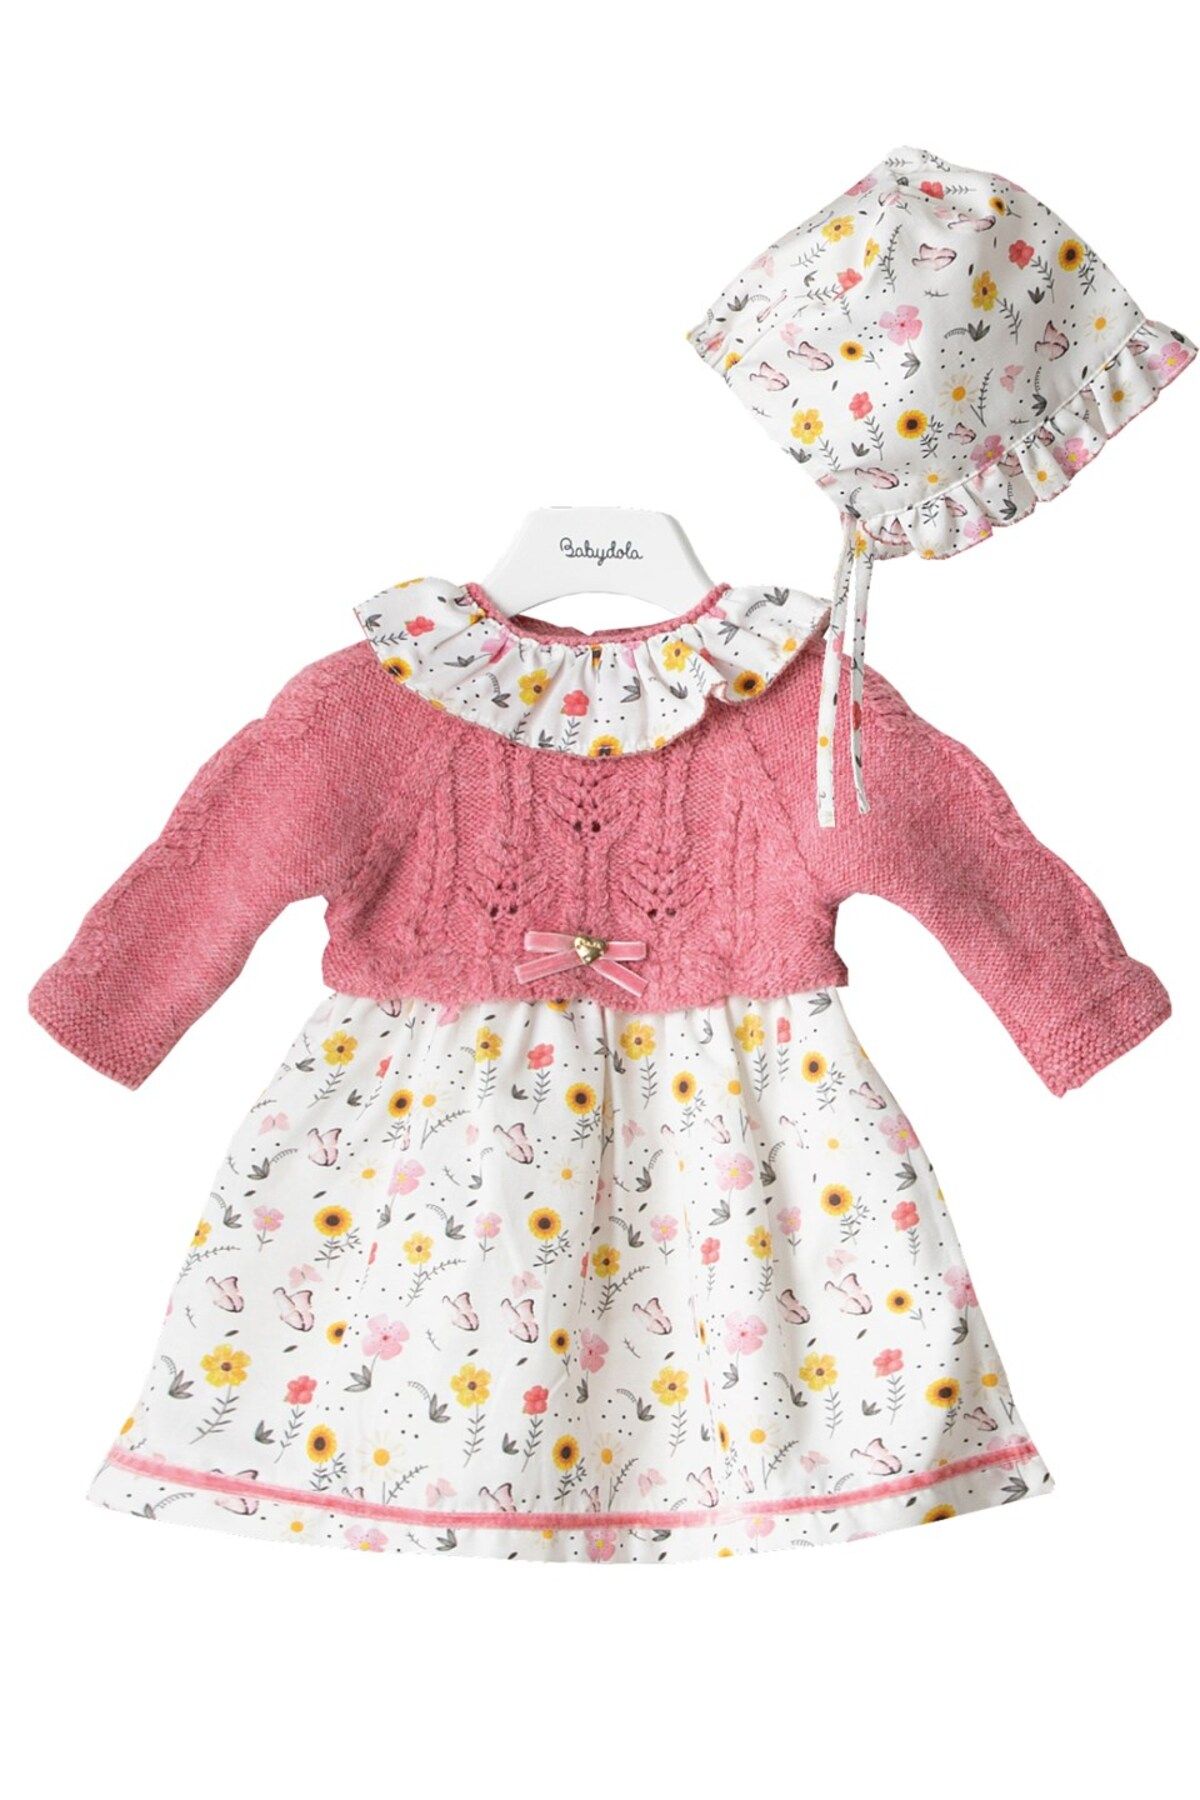 Babydola Kız Bebek Çiçekli Triko Elbise & Şapka 2'li Takım